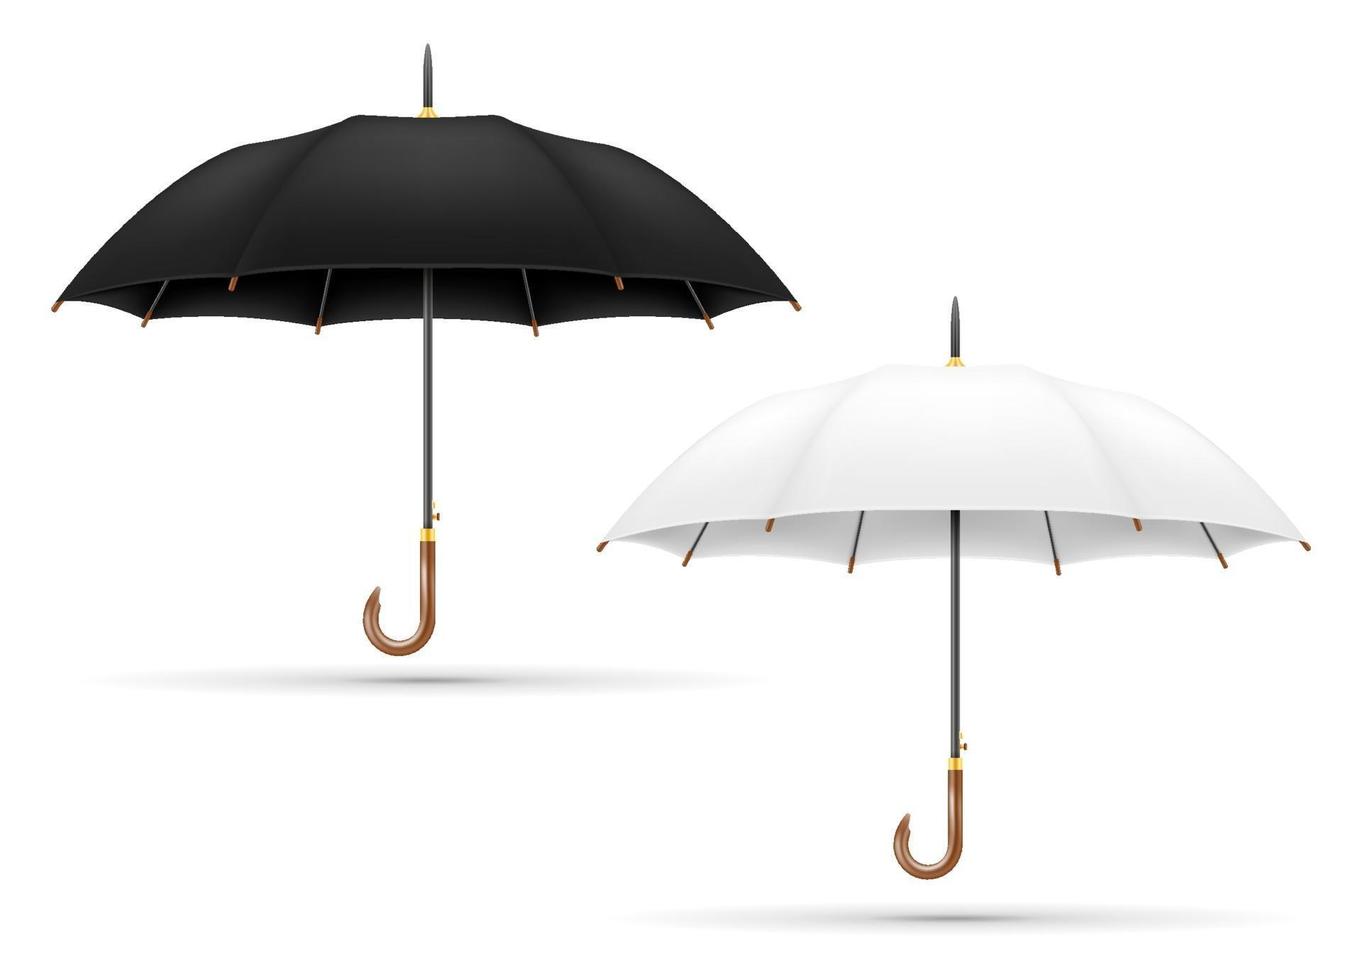 klassischer Regenschirm von Regenvorratvektorillustration lokalisiert auf Hintergrund vektor